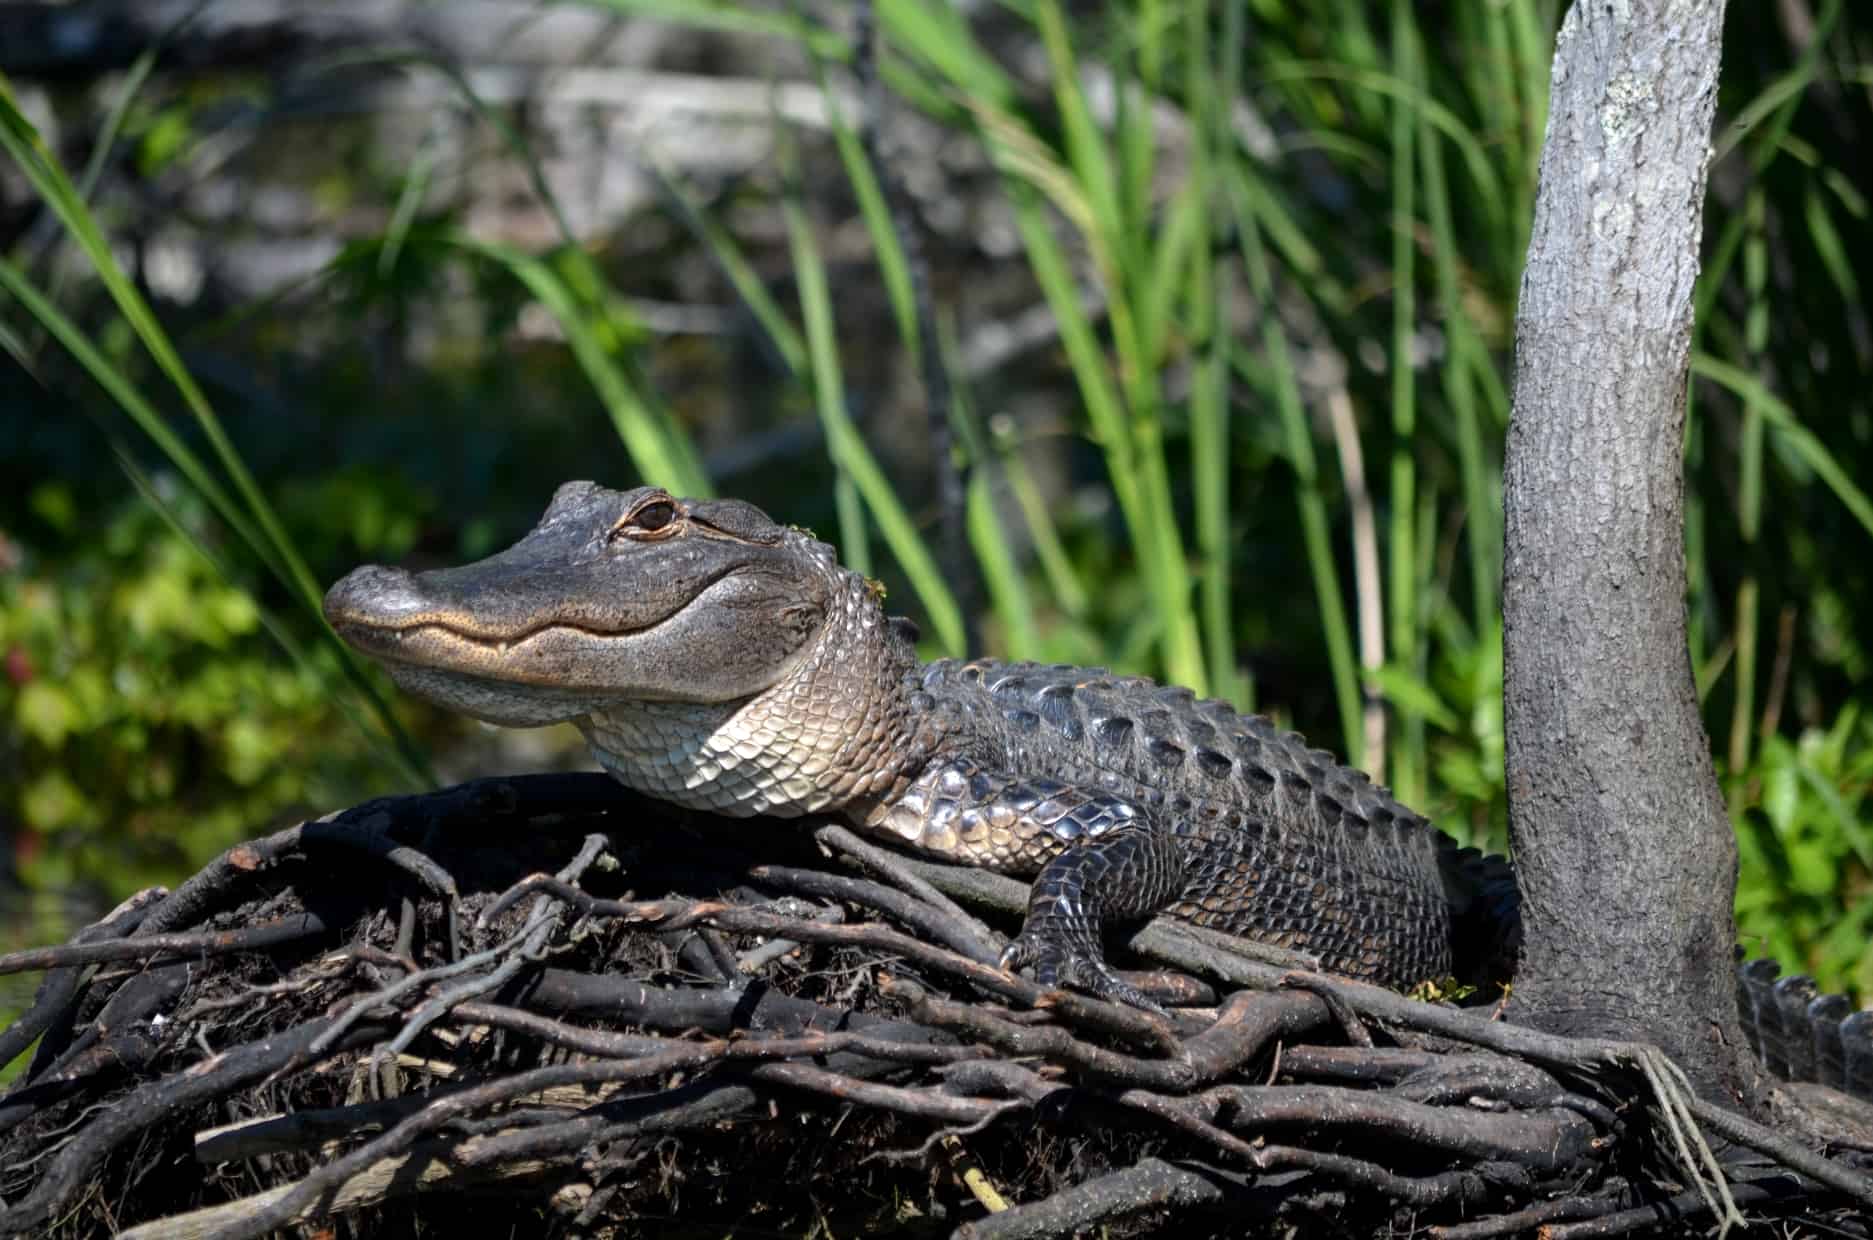 Alligator Season Starts this Week!